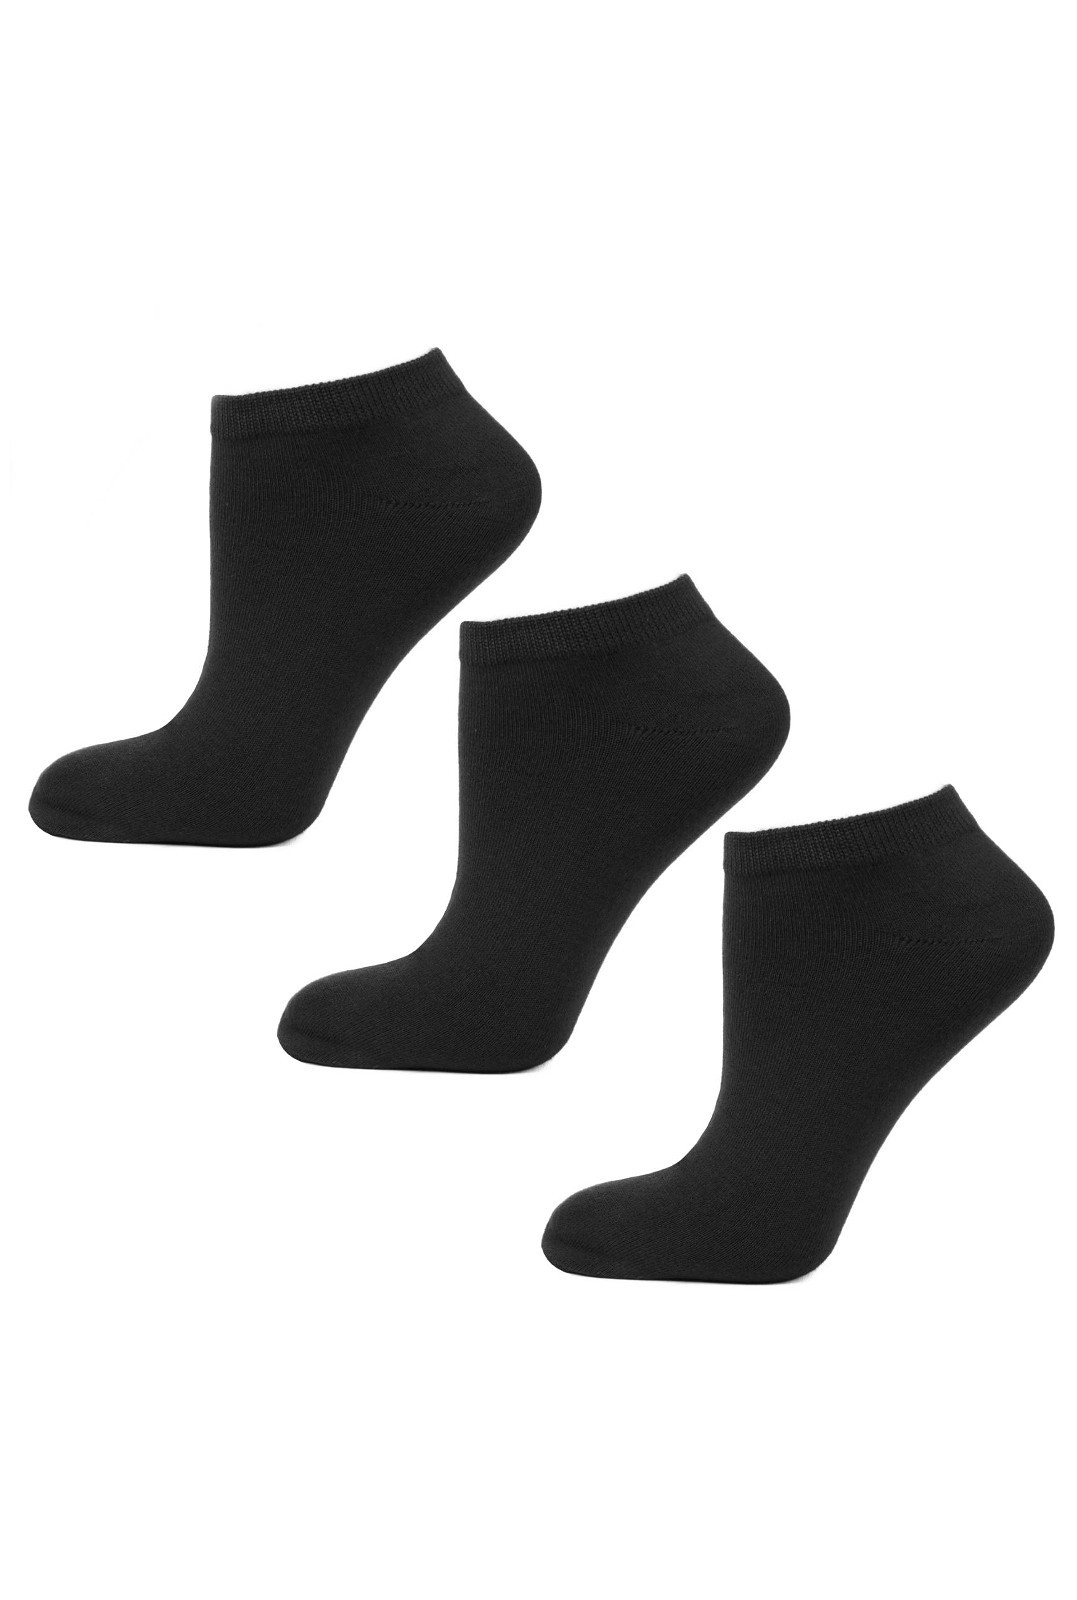 Pánské ponožky Moraj BSK200-03 A'3 43-45 černá 39-42